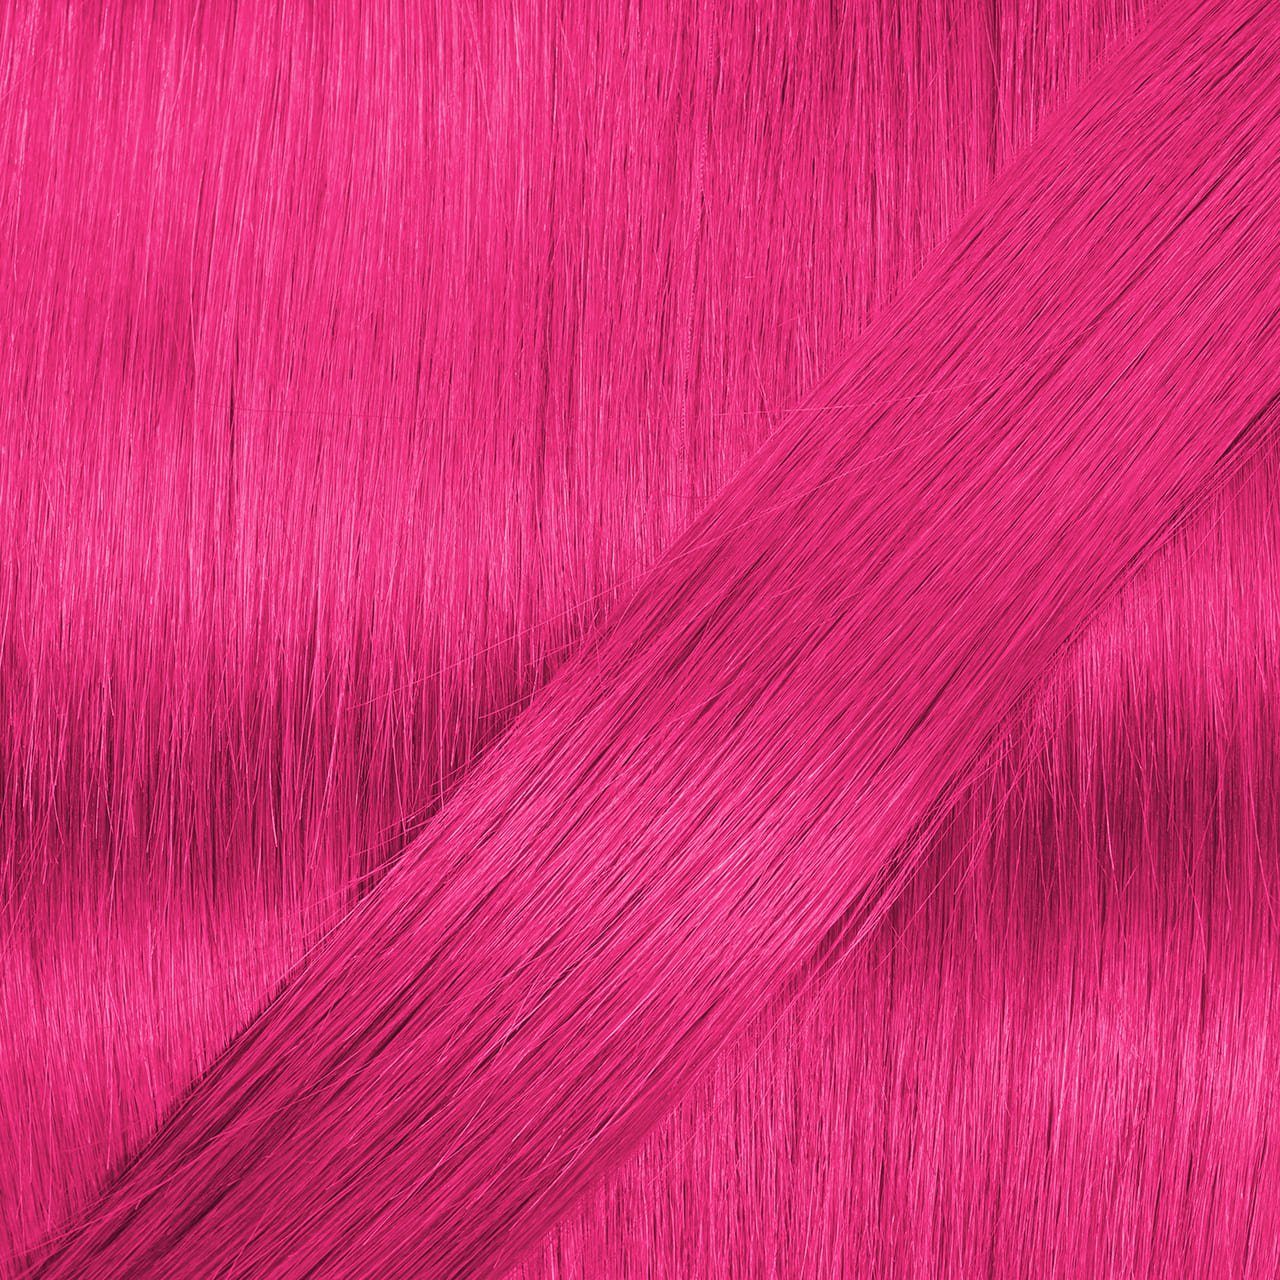 hair2heart Microring Echthaar-Extension Premium Extensions 50cm #Pink